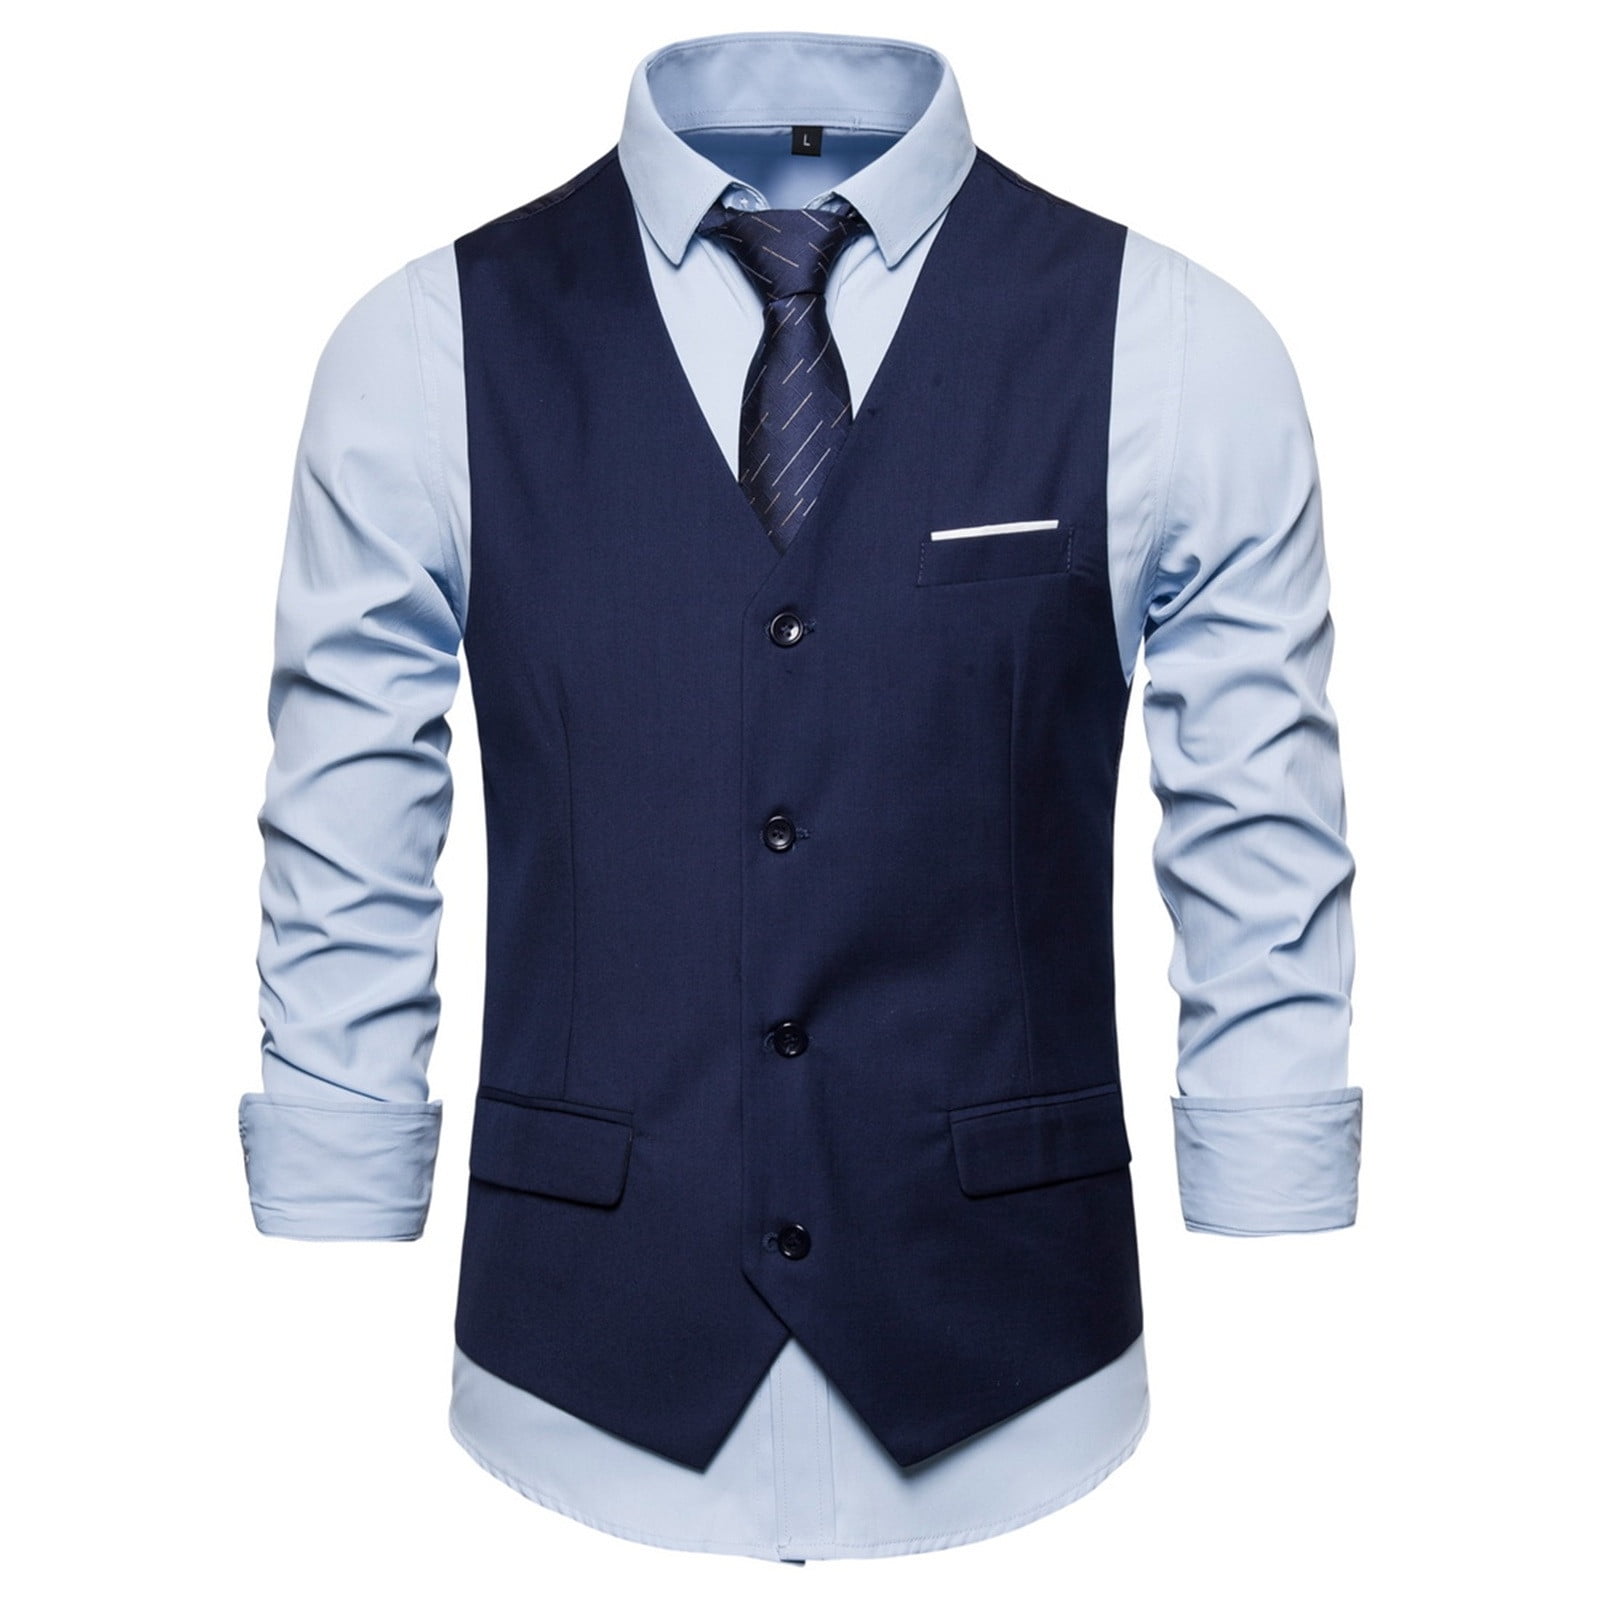 QENGING Men's Suit Jacket Formal Bussiness Tuxedo Suit Waistcoat Vest  Blazer Jacket Top Coat Deals of The Day